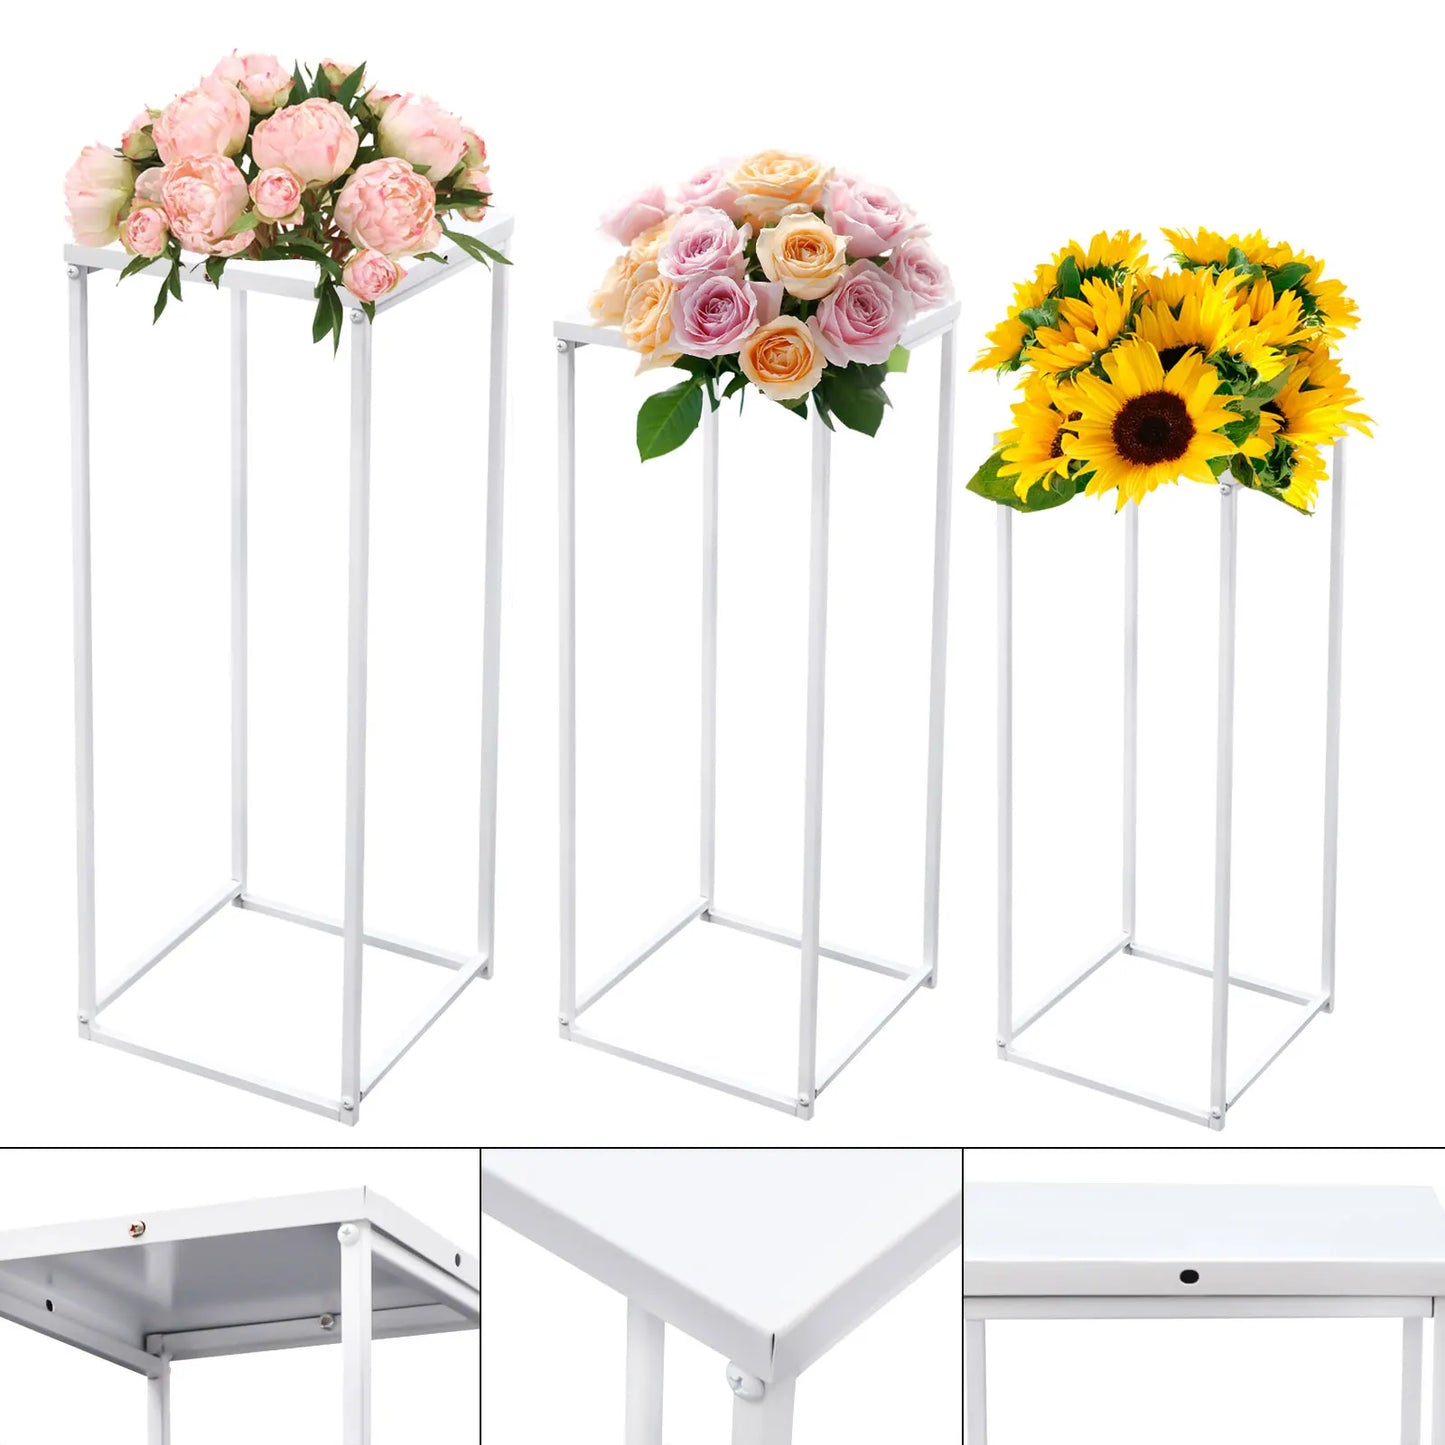 Set of 3 Metal Plant Pot Stand Indoor Flower Display Holder Rack White Set of 3 Metal Plant Stands